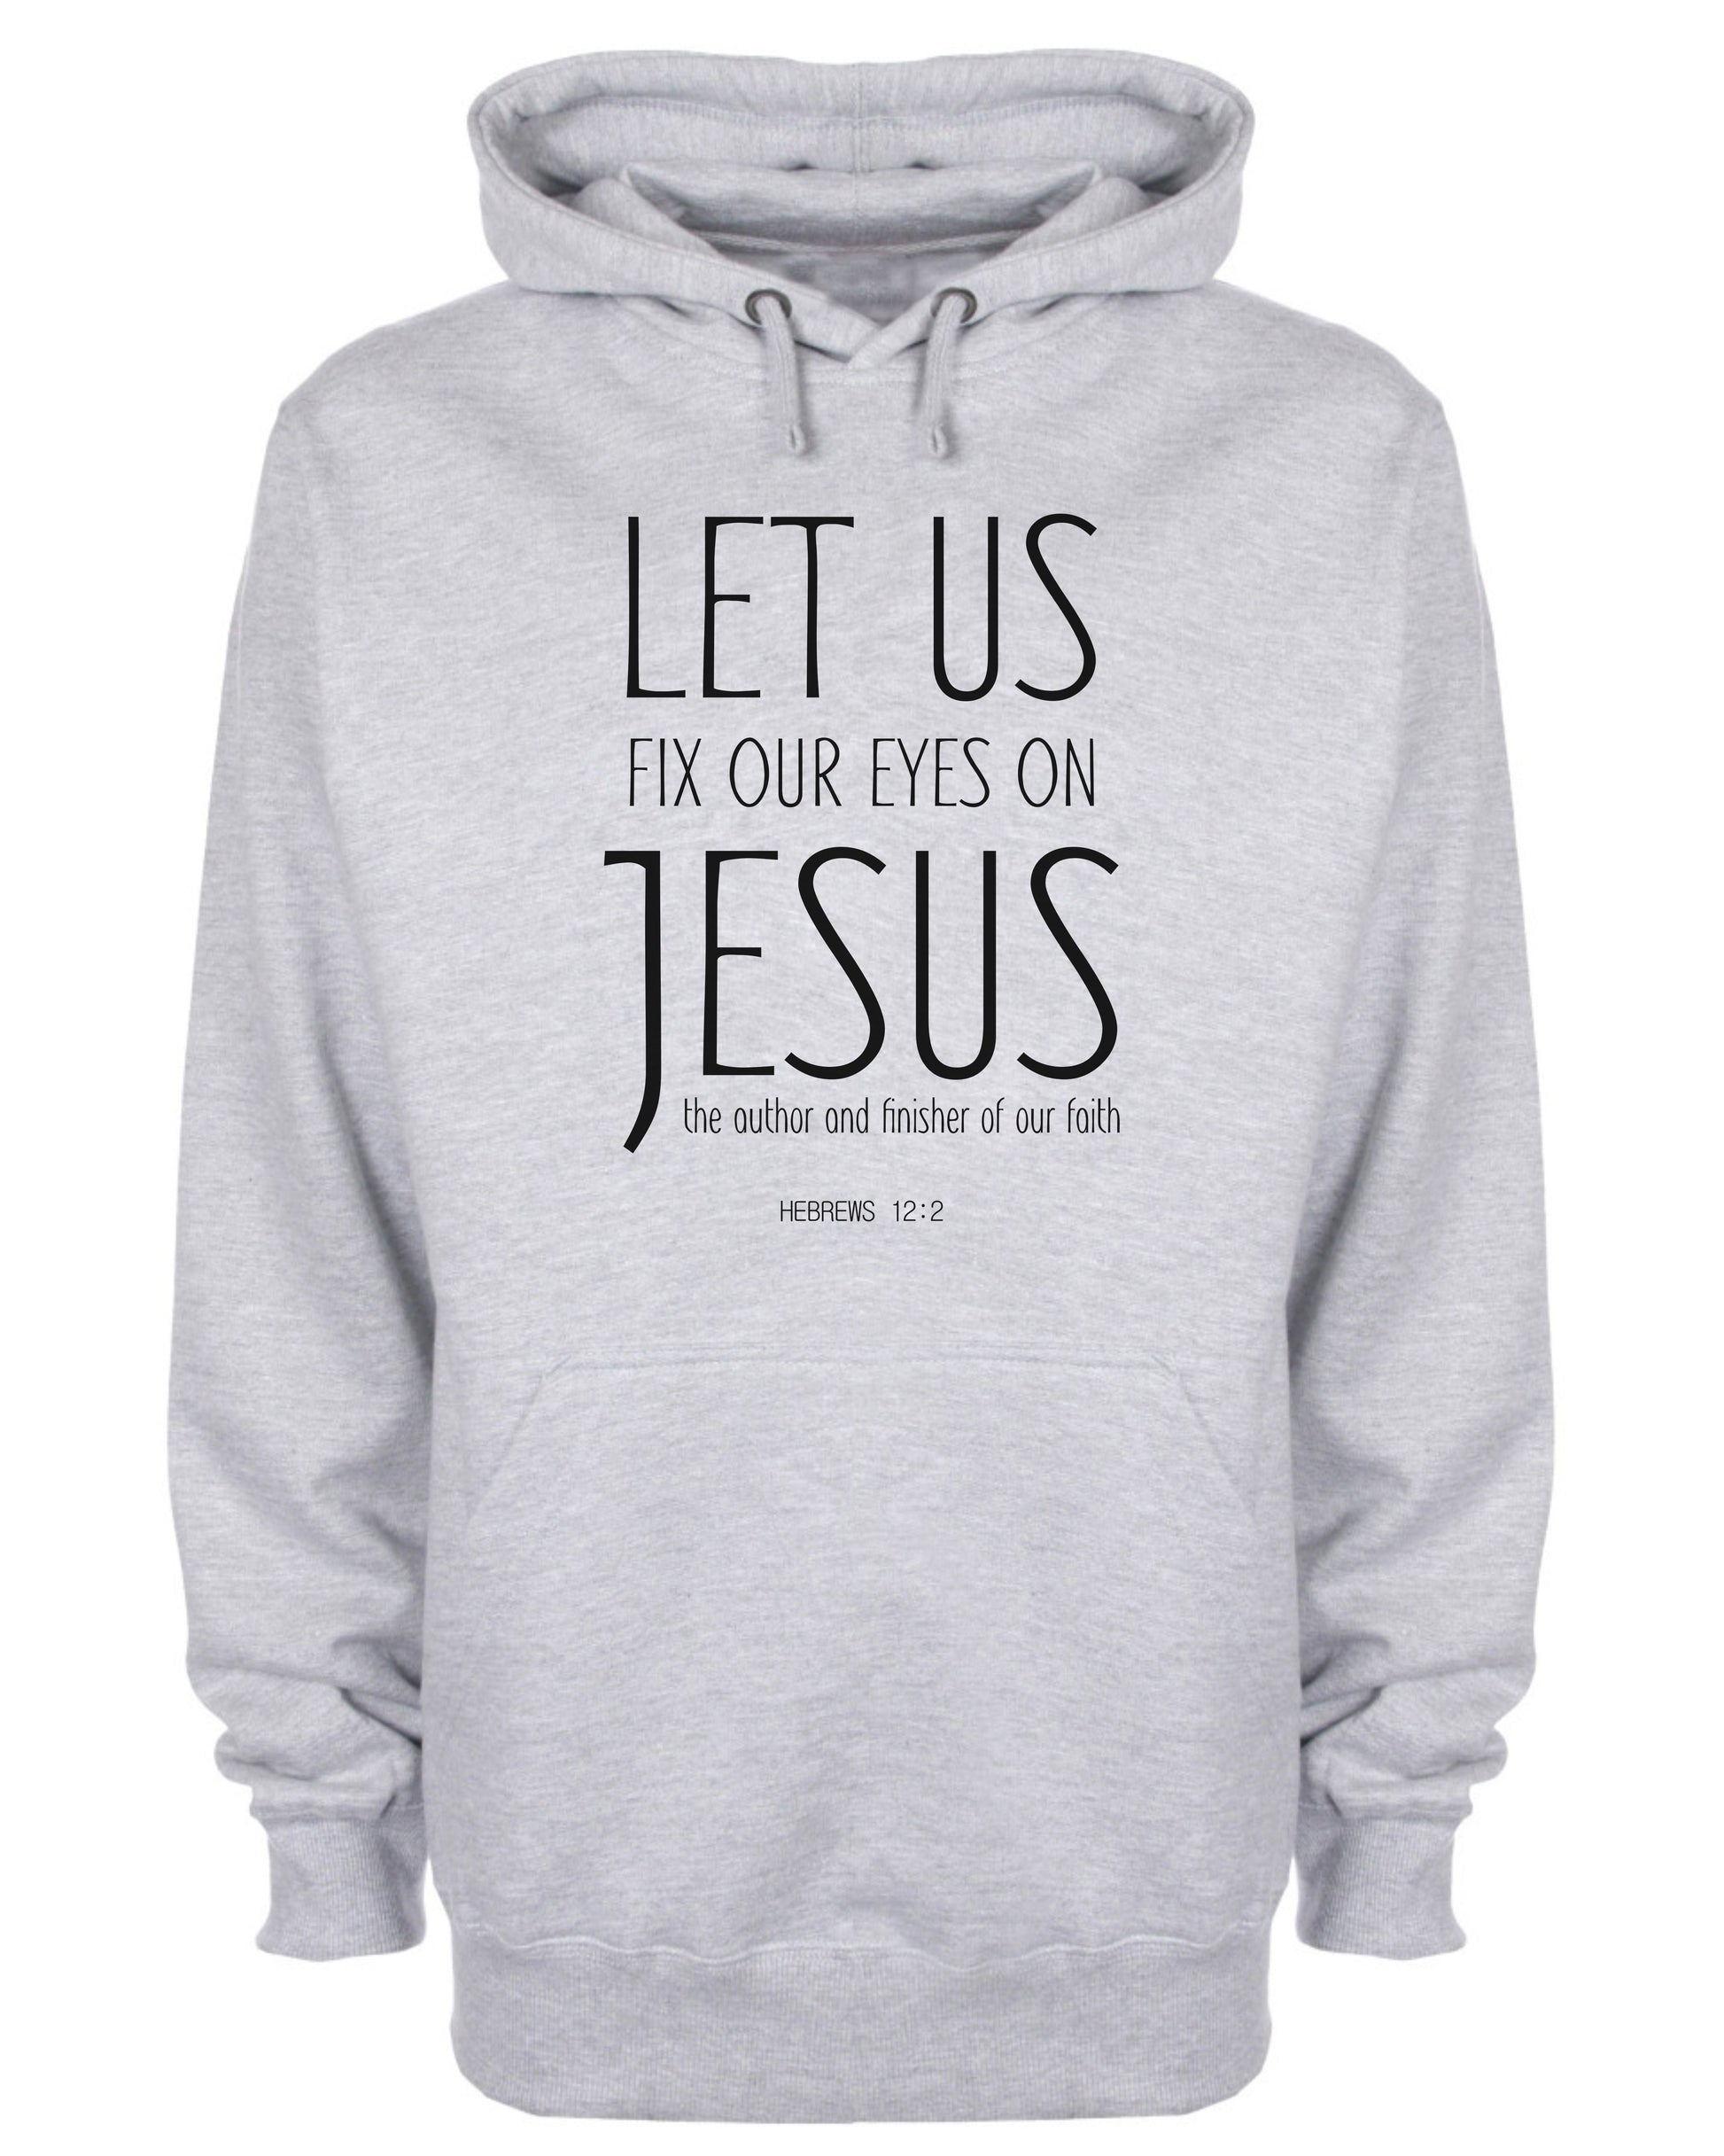 Let Us Fix Our Eyes on Jesus Hoodie Christian Sweatshirt